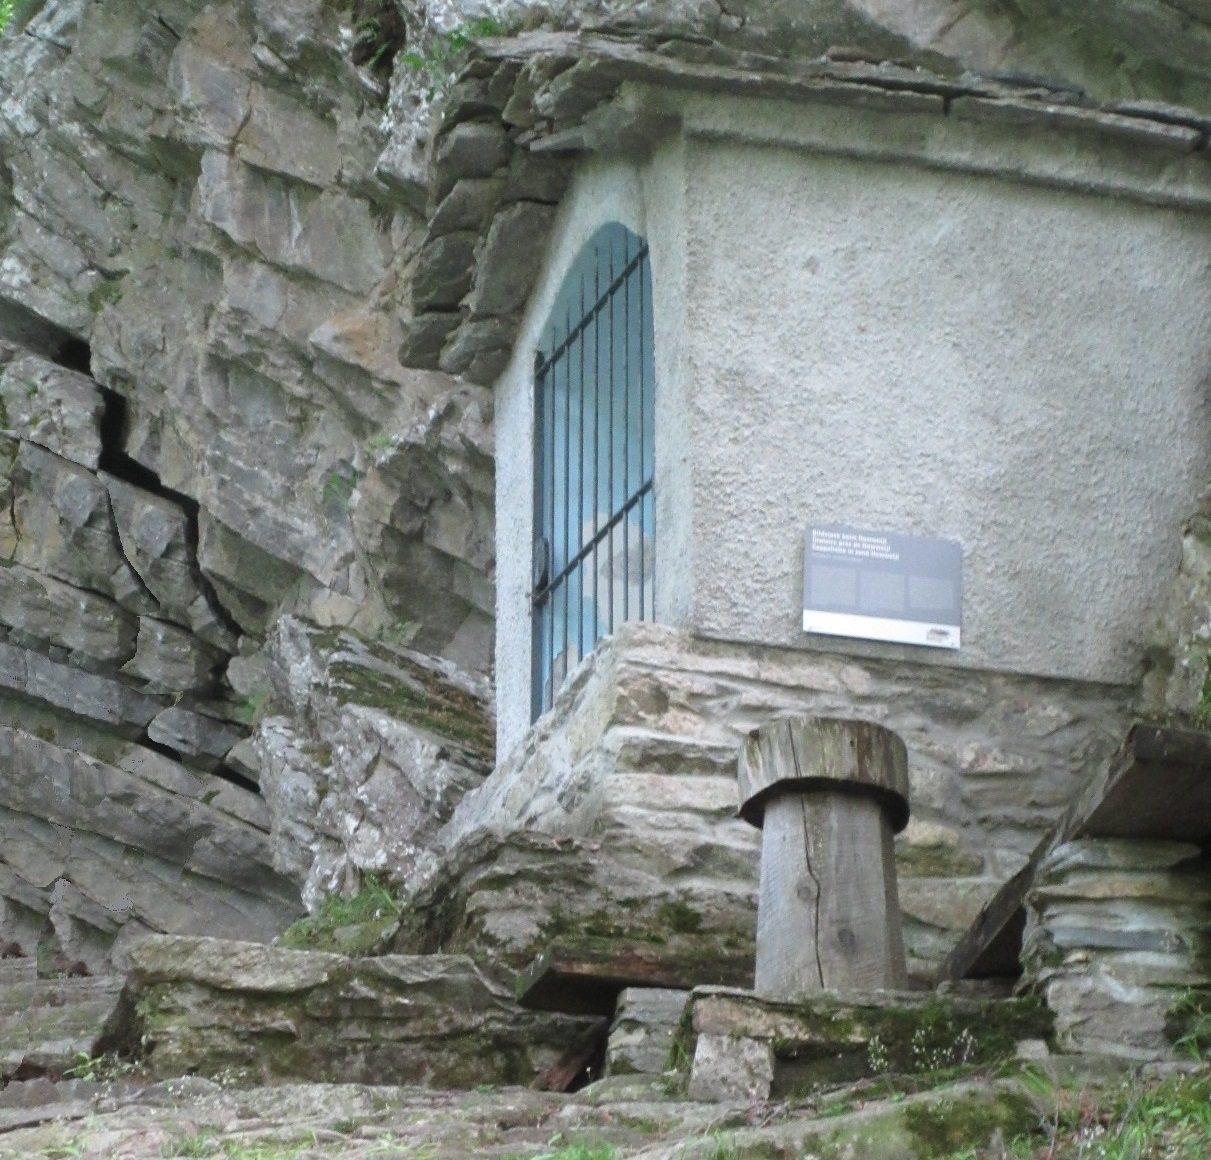 Загадочная деревня среди плачущих гор Гондо, Швейцария